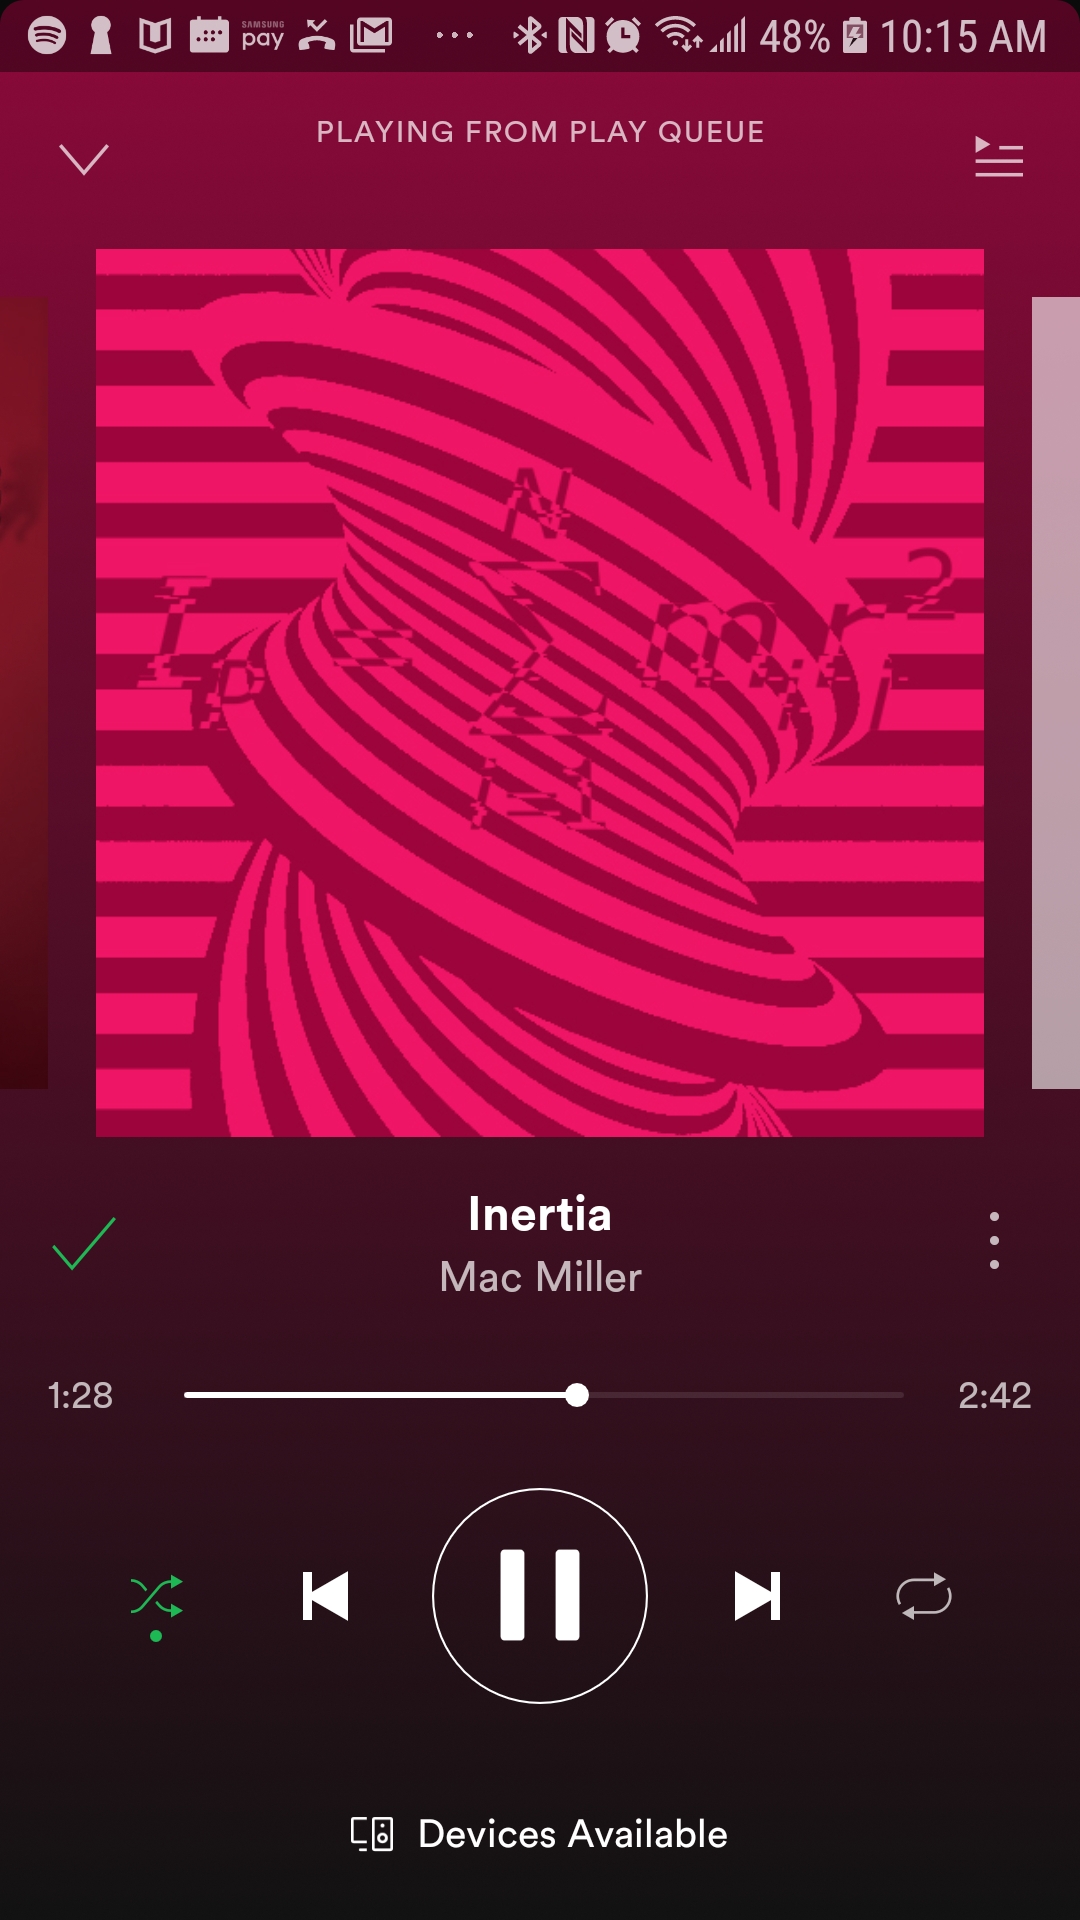 Inertia mac miller spotify download